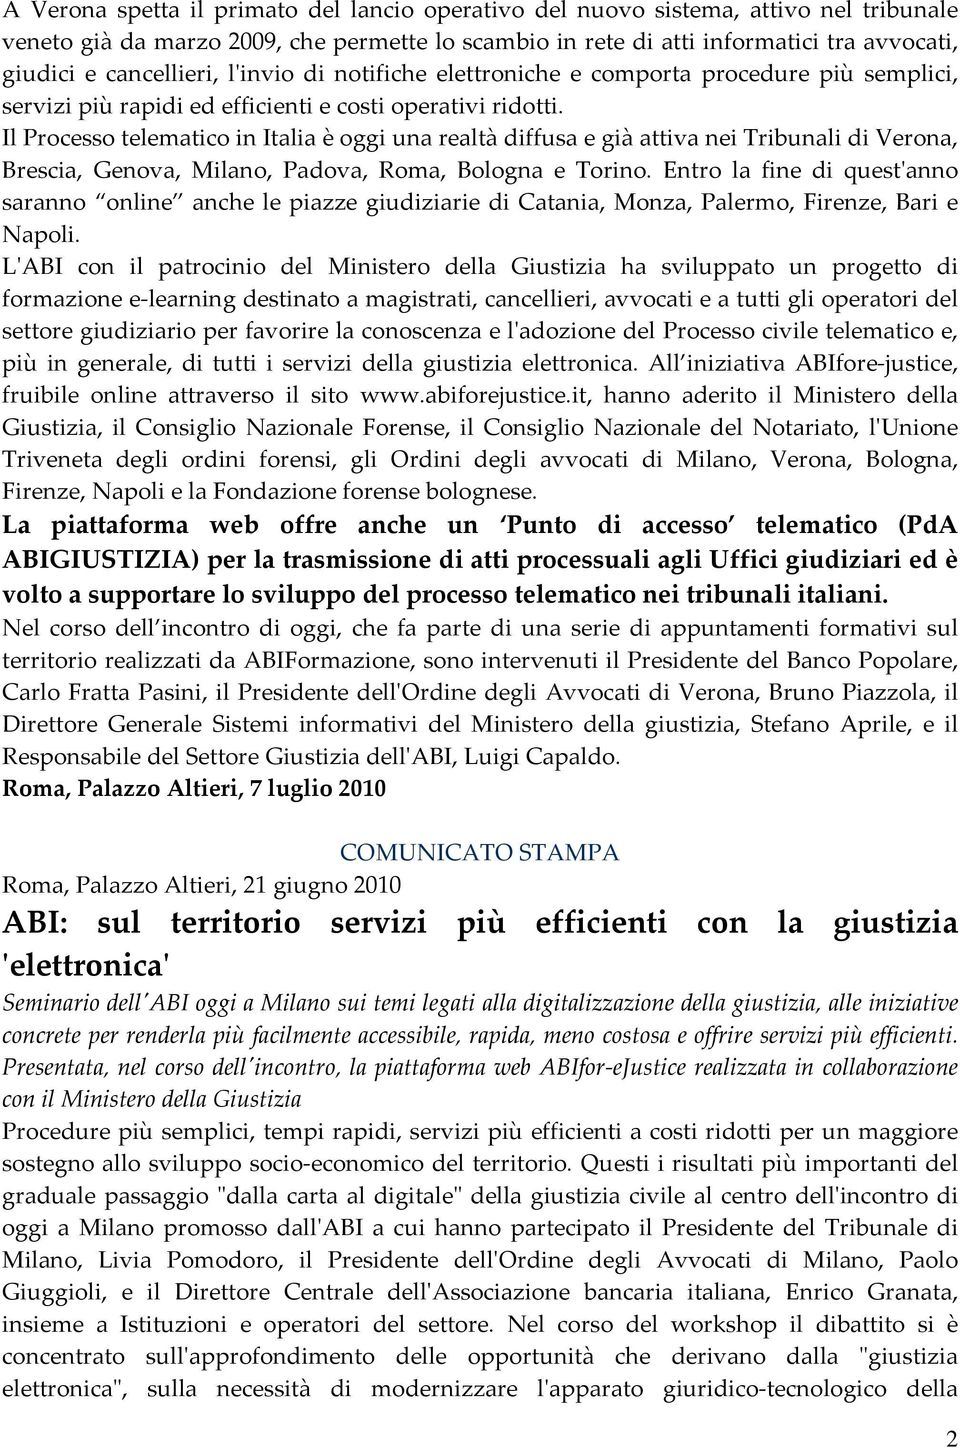 Il Processo telematico in Italia è oggi una realtà diffusa e già attiva nei Tribunali di Verona, Brescia, Genova, Milano, Padova, Roma, Bologna e Torino.